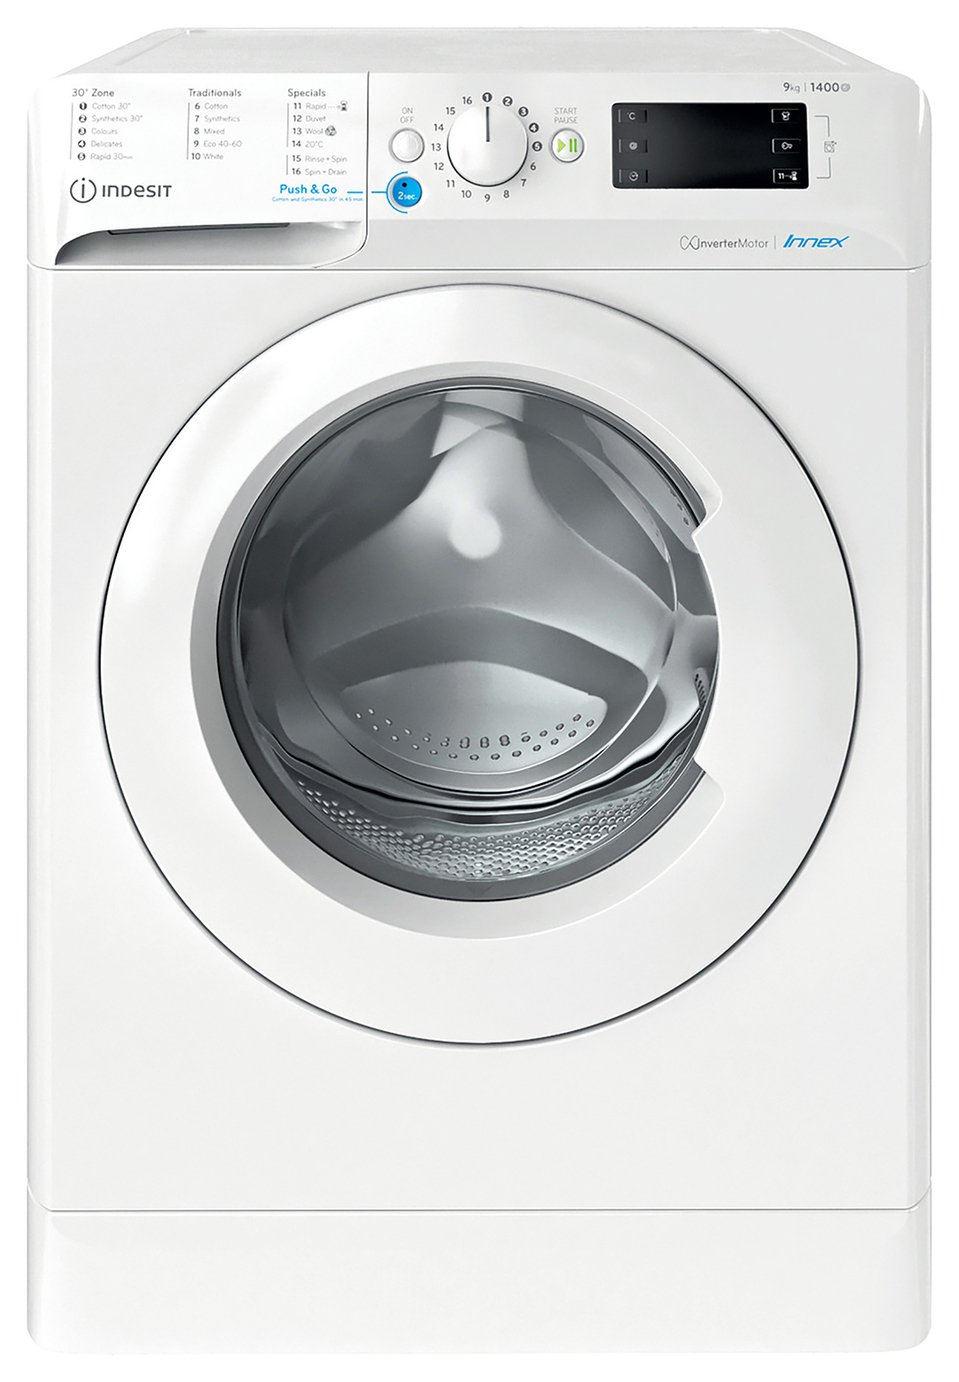 Indesit BWE91496XWUKN 9KG 1400 Spin Washing Machine - White